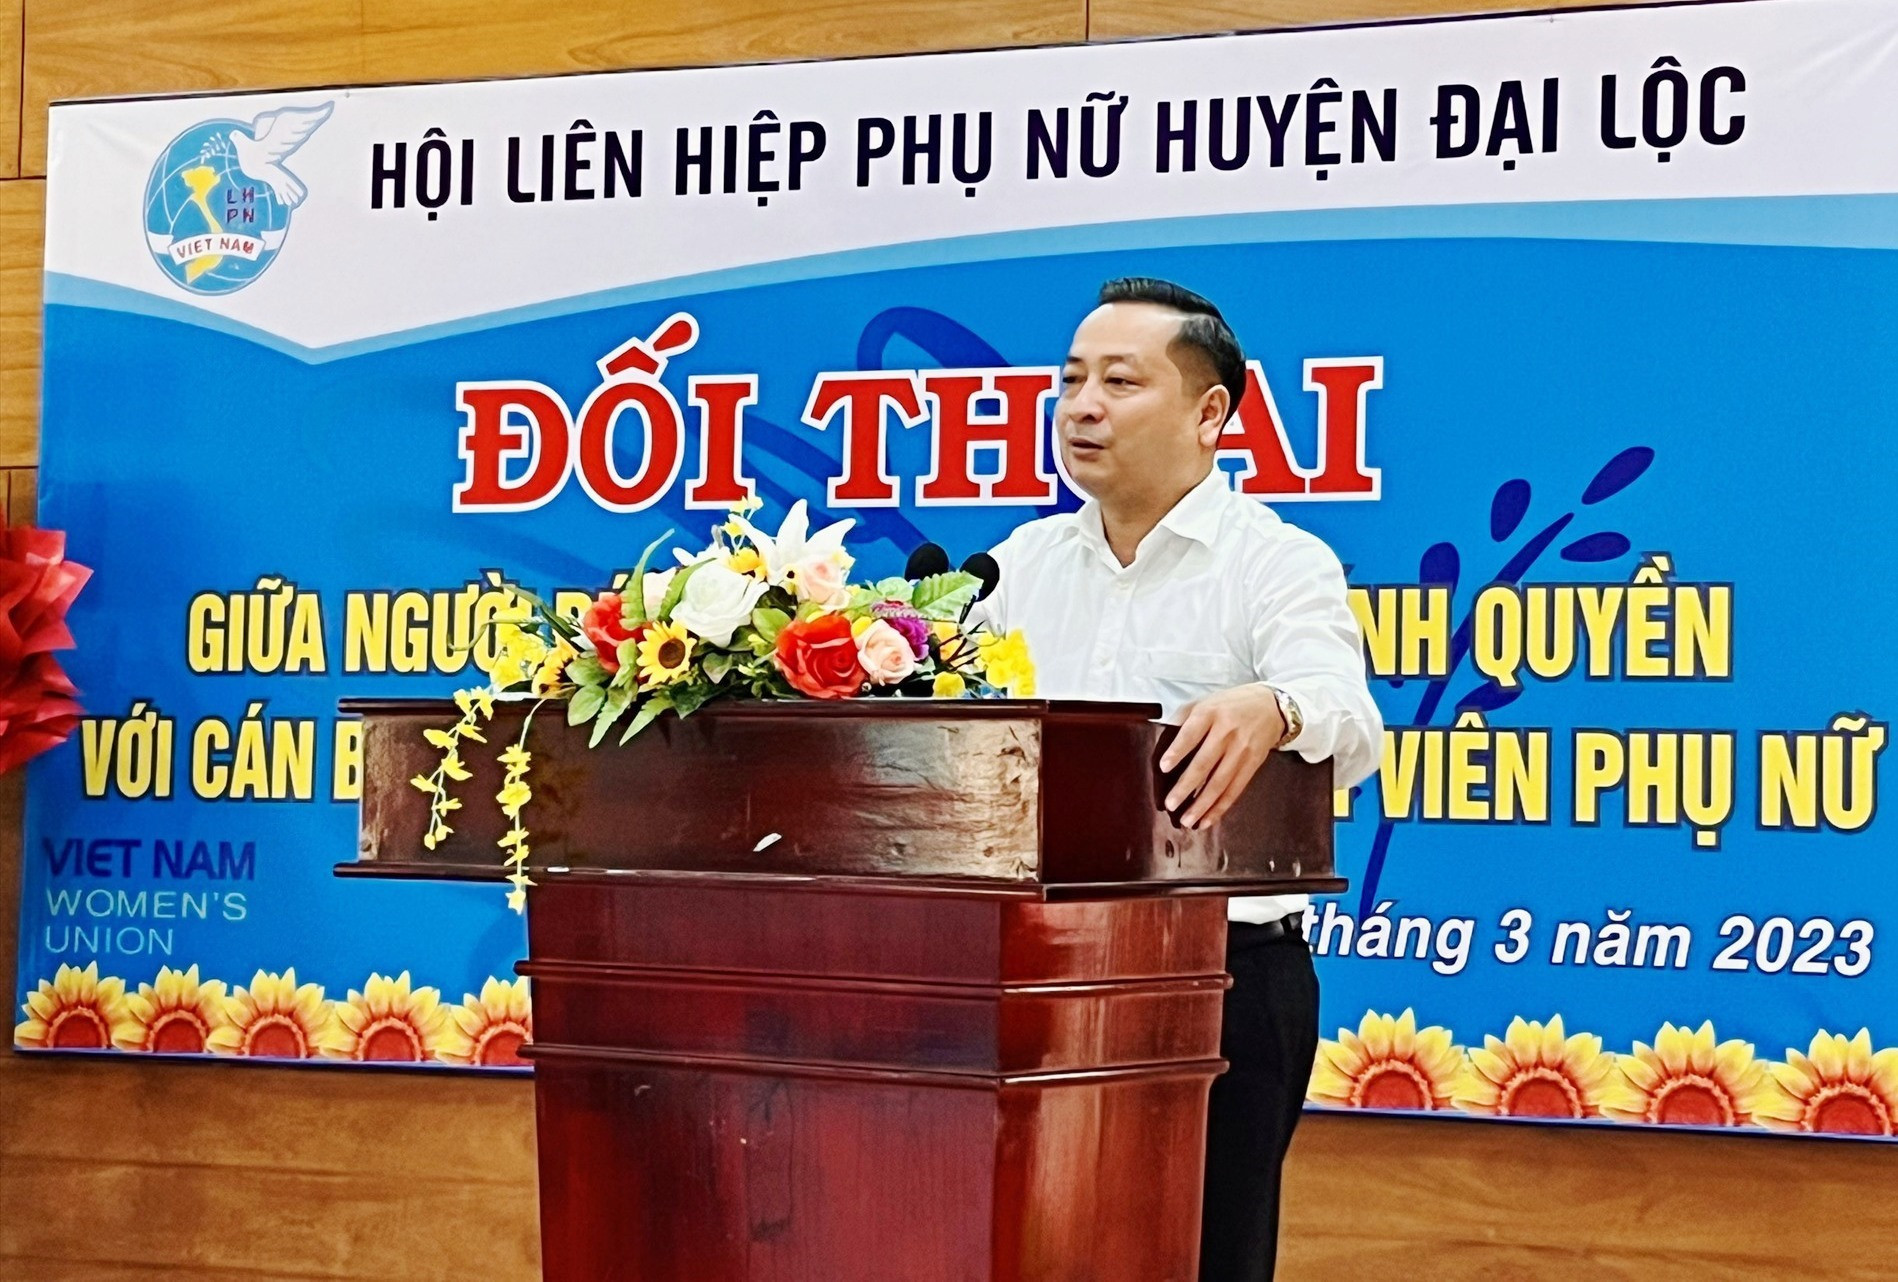 Ông Nguyễn Hảo, Bí thư Huyện ủy Đại Lộc phát biểu tại buổi đối thoại. Ảnh: H.LIÊN